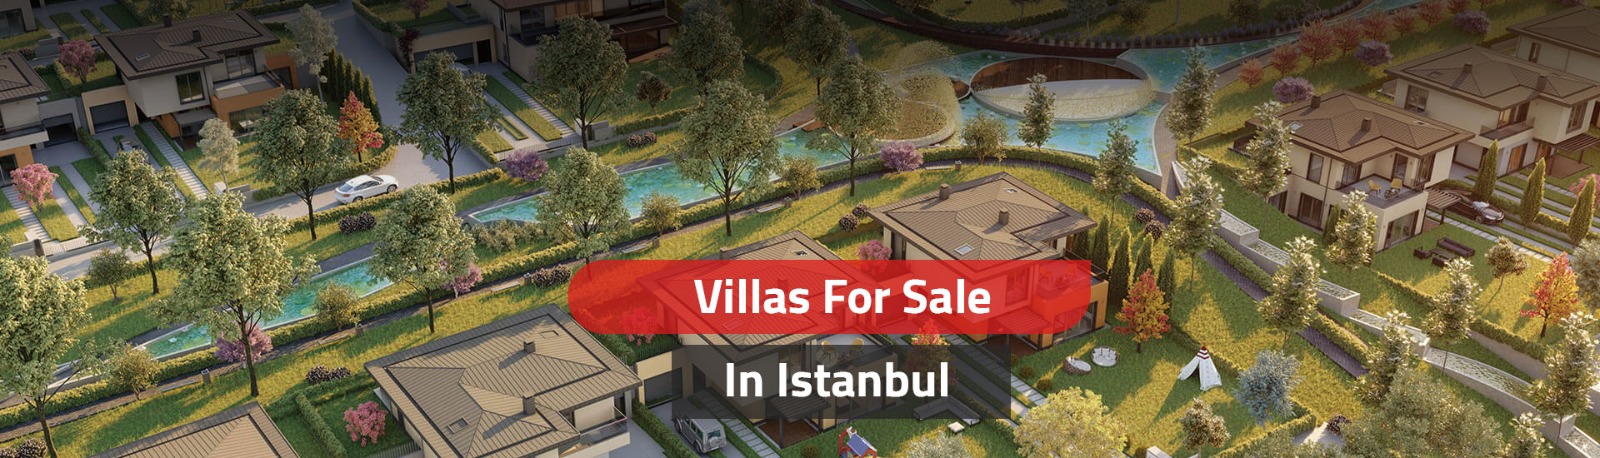 Villas For Sale In Istanbul Turkey